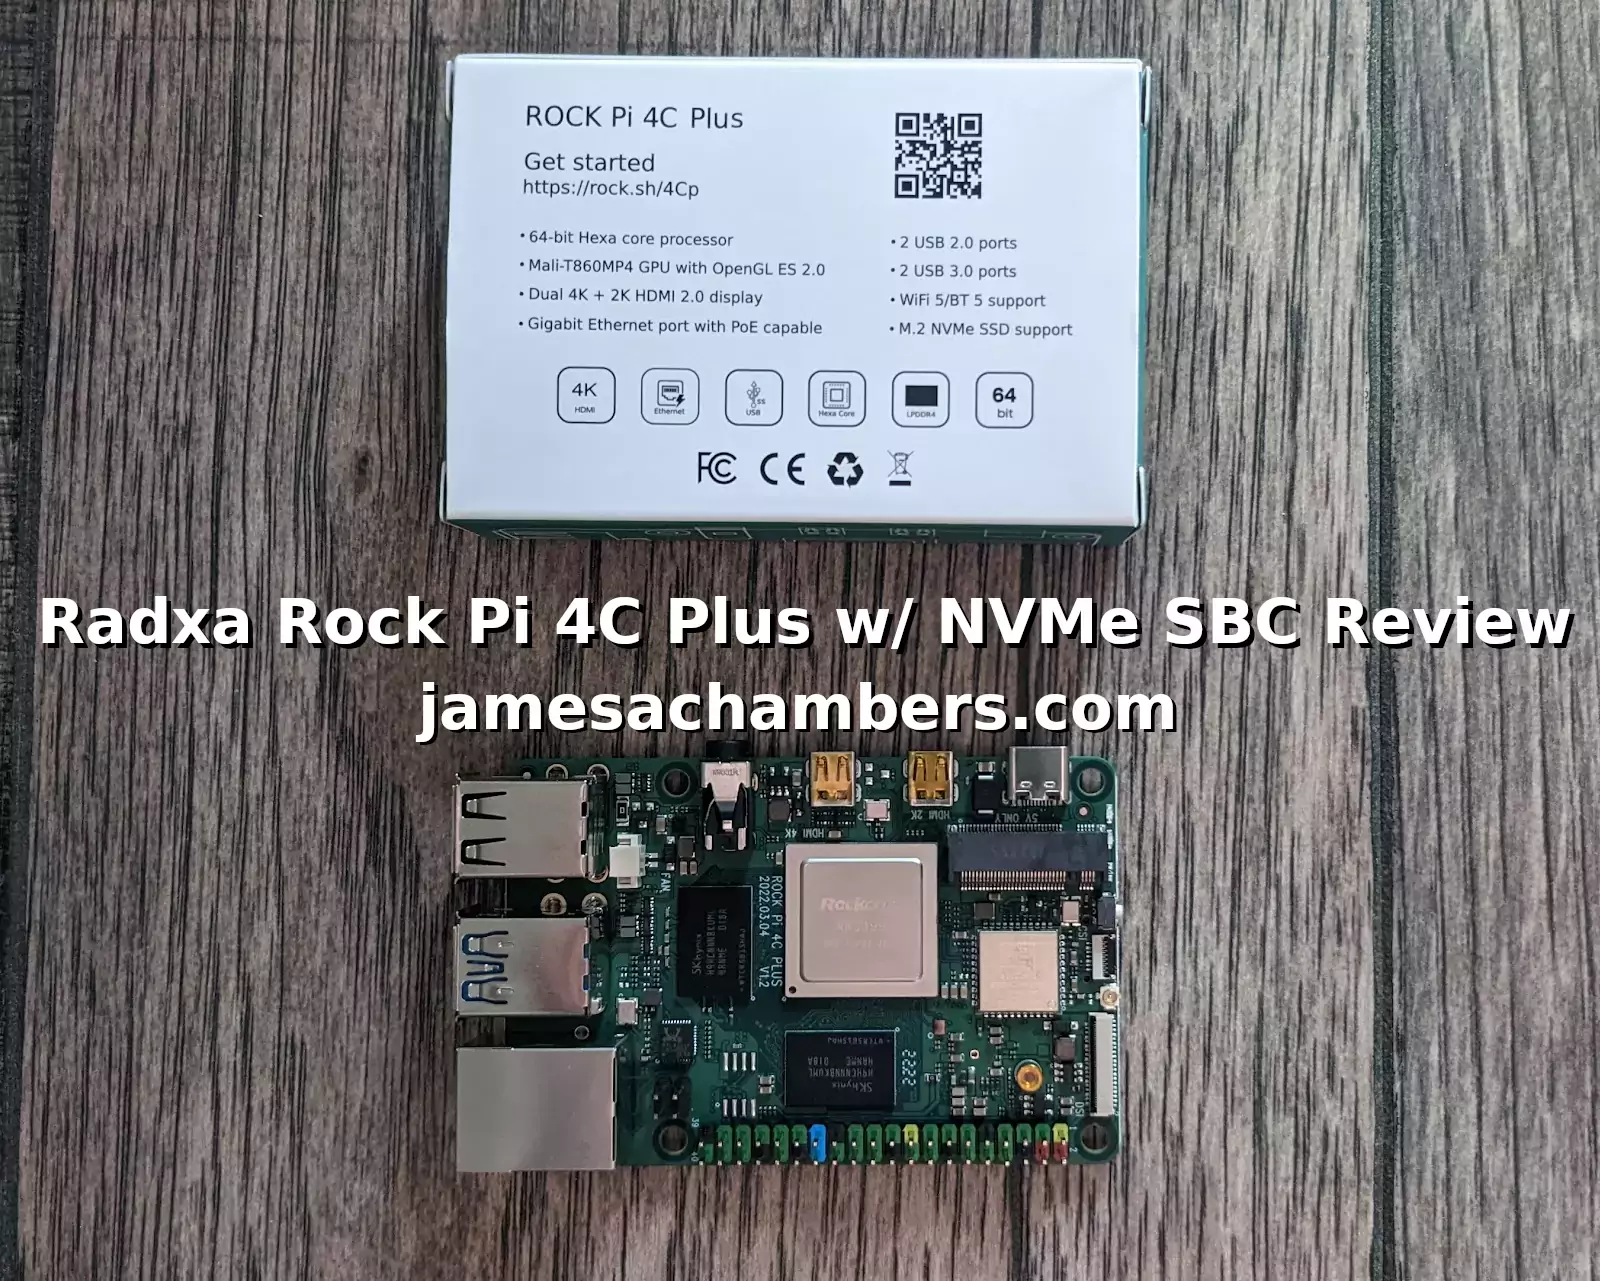 Radxa Rock Pi 4C Plus w/ NVMe Review